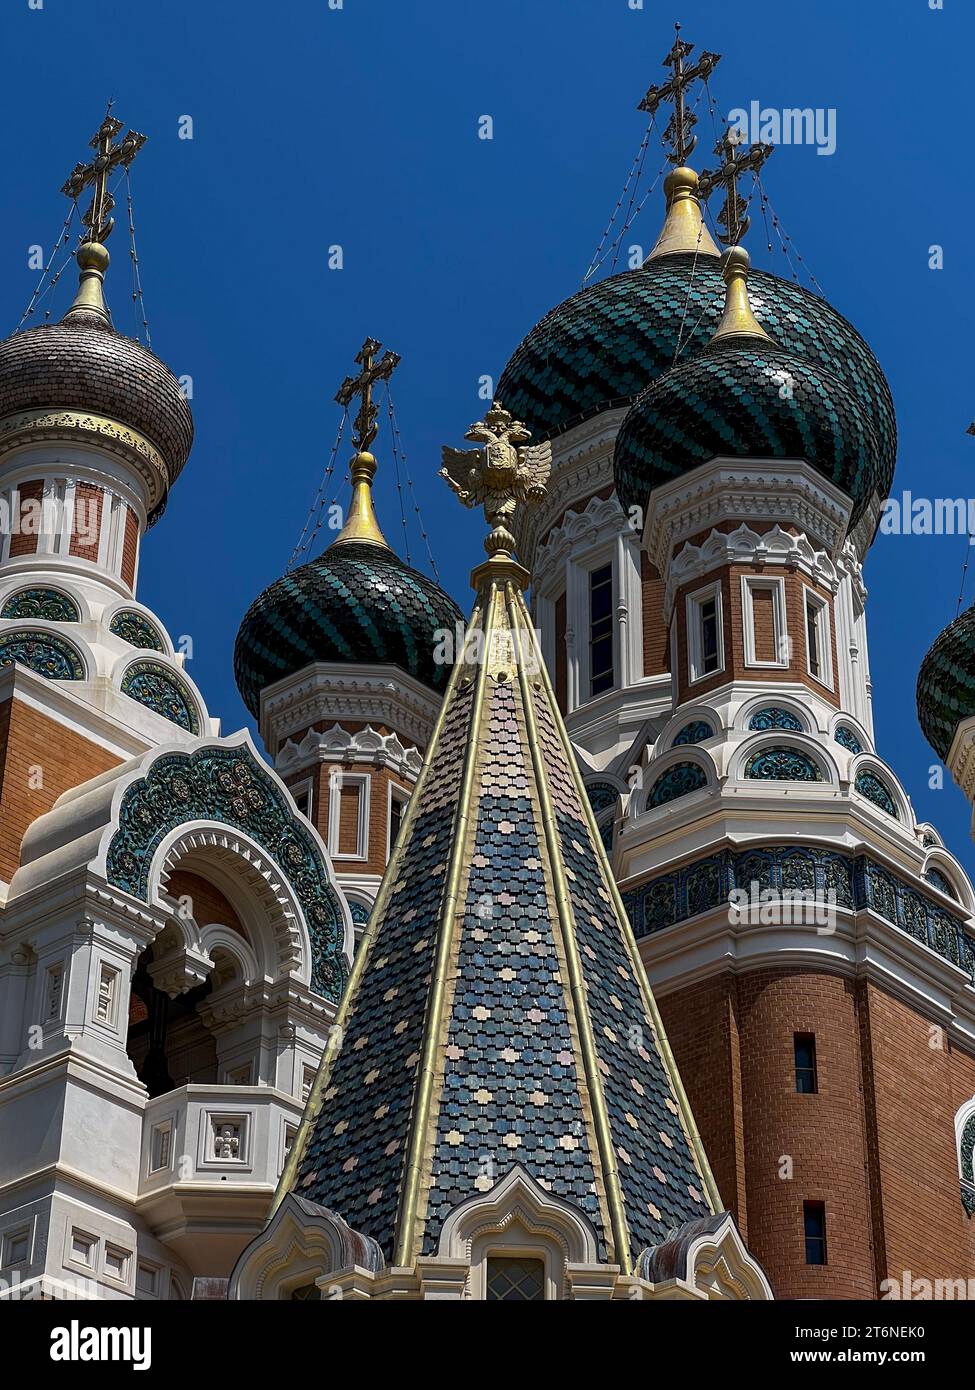 Cattedrale ortodossa di San Nicola nella città di Nizza, regione Costa Azzurra in Francia. È la più grande cattedrale ortodossa dell'Europa occidentale. Foto Stock